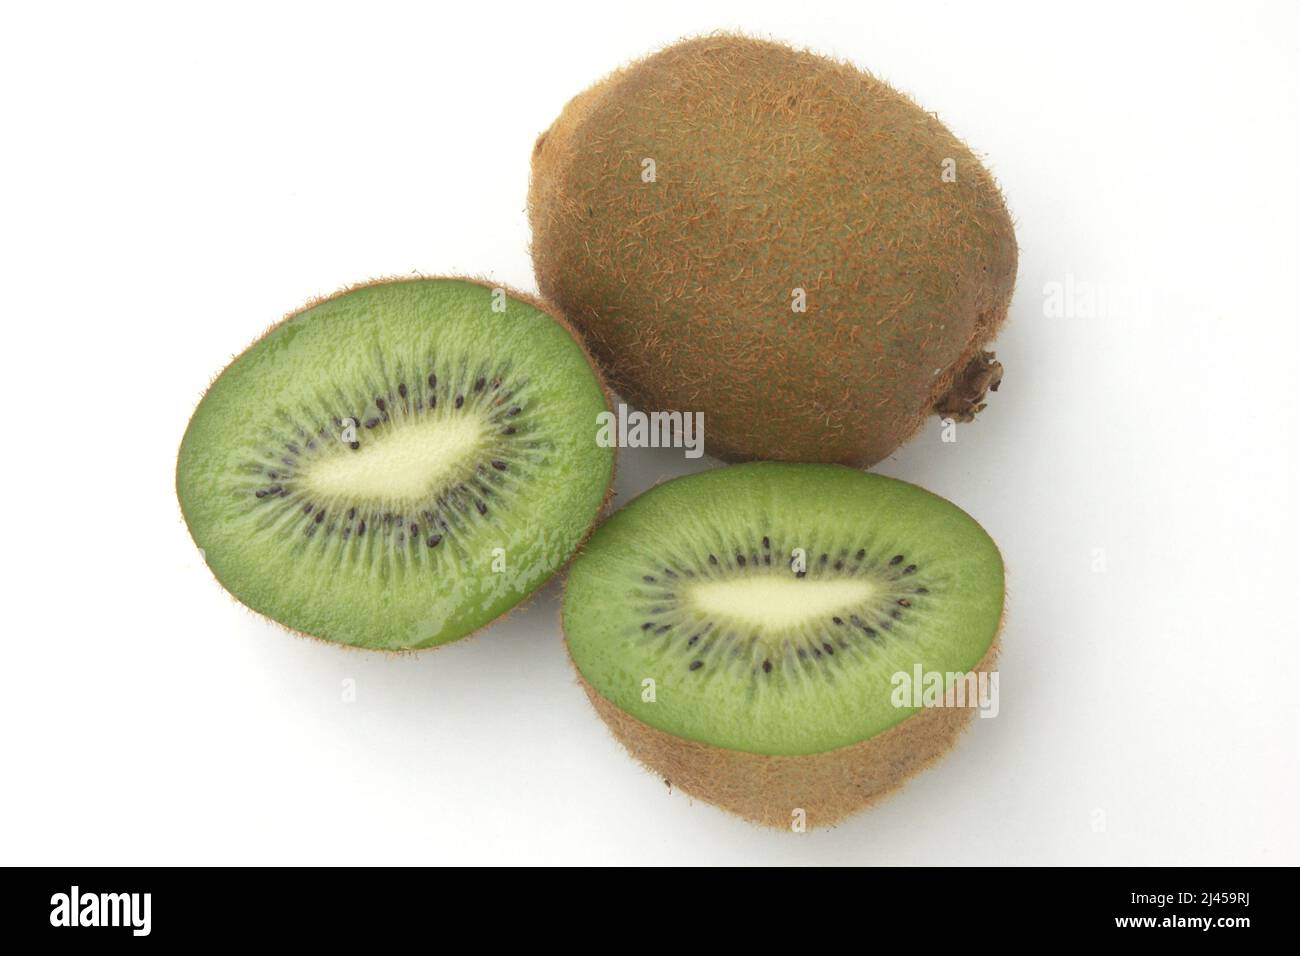 Eine ganze und eine aufgeschnittene Kiwi, Kiwi, Früchte, Obst, Stock Photo